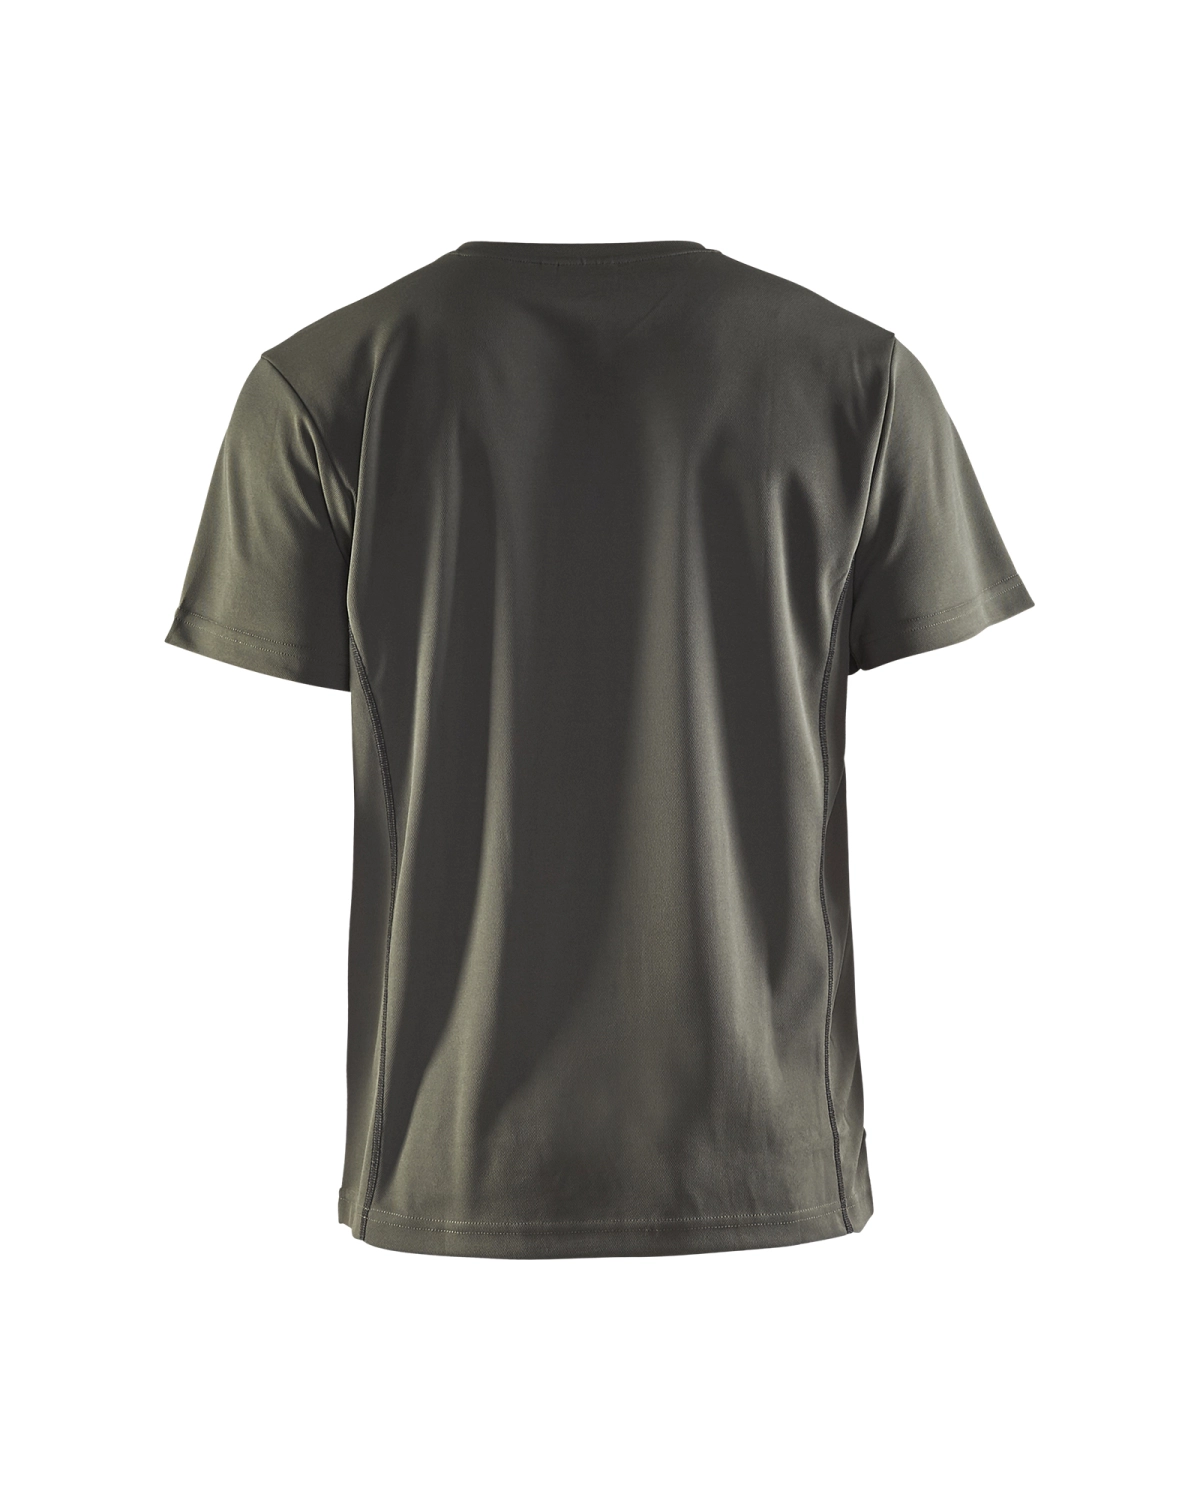 Blåkläder 3323 UV t-shirt - army groen - XXL-image